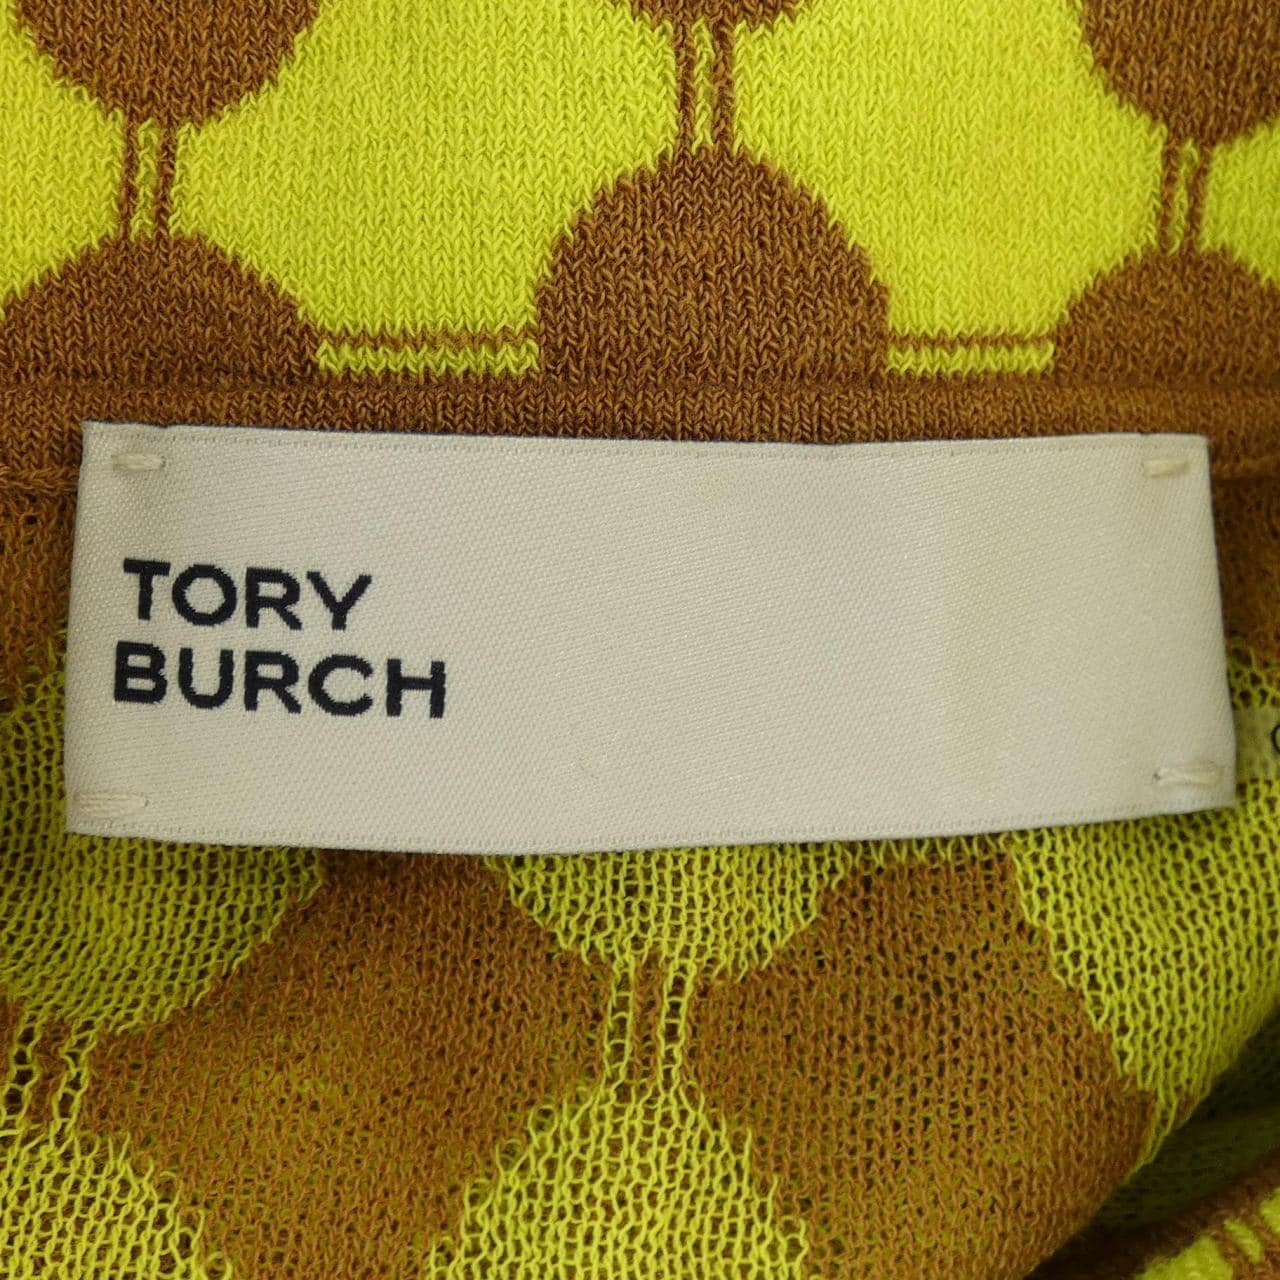 托里·伯奇 (Tory Burch) POLO TORY BURCH